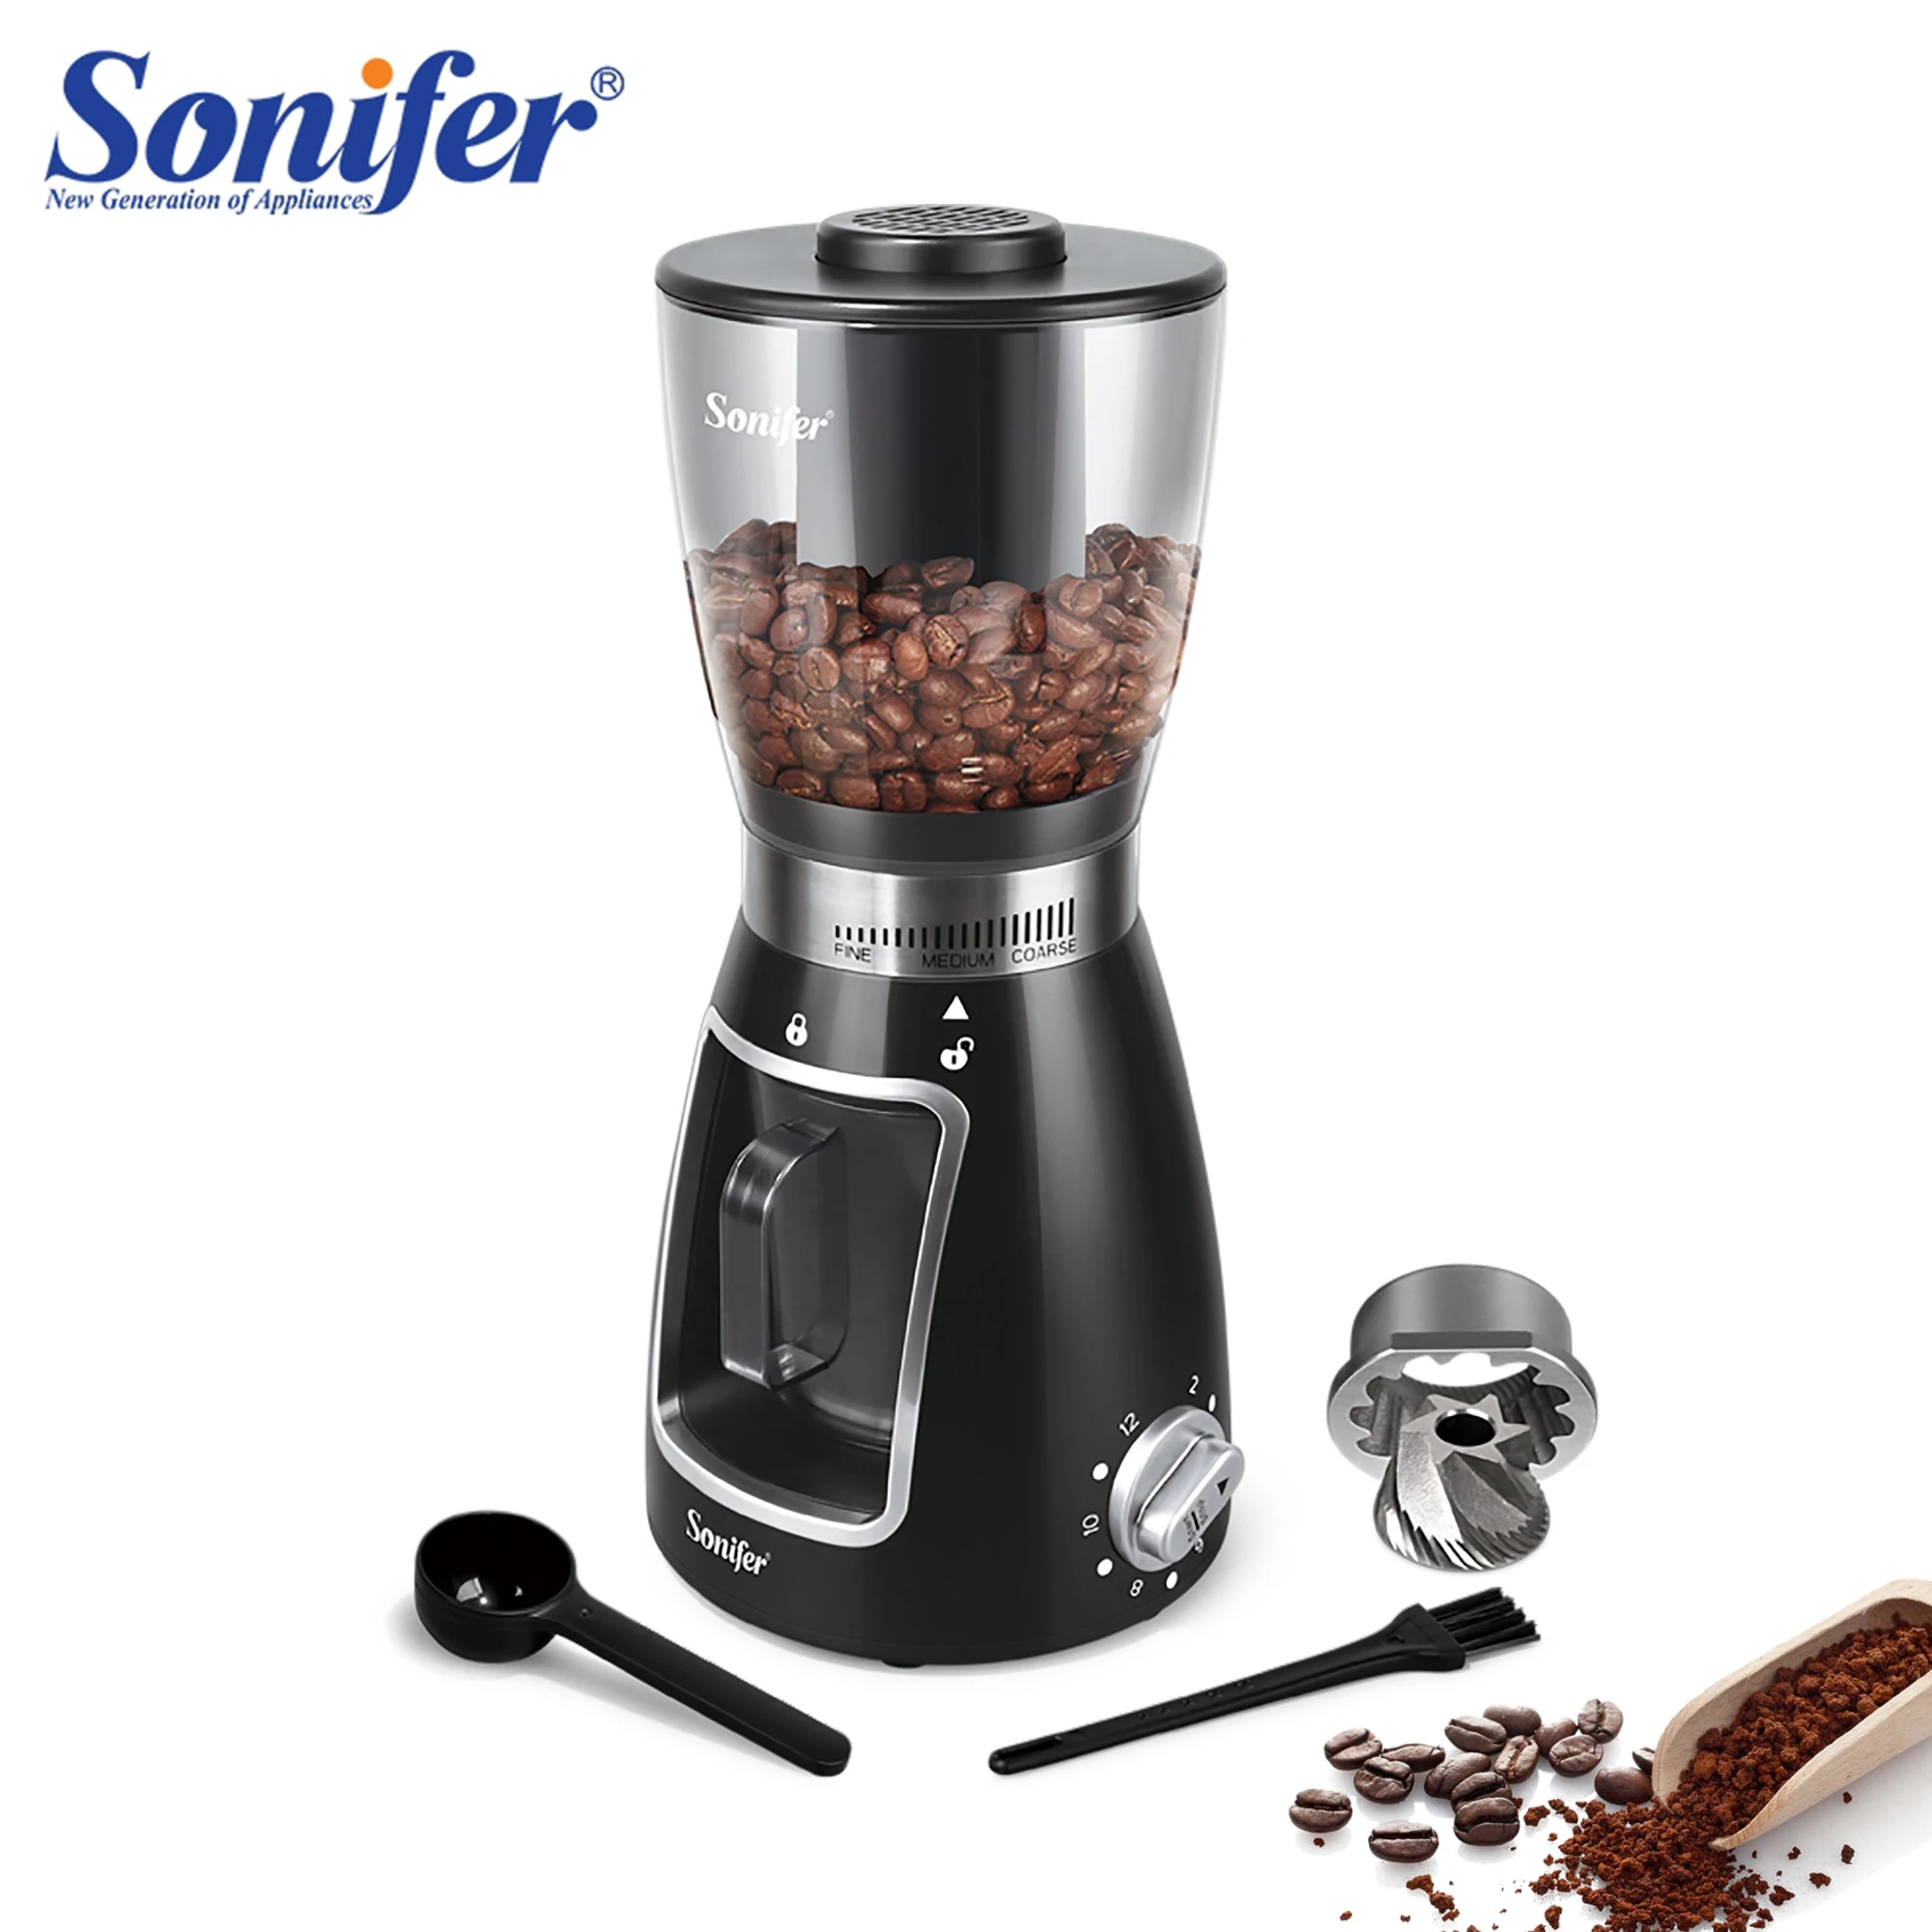 

Электрическая кофемолка Sonifer, мельница для приготовления кофе, травы, орехов, трав, зерен, перца, табака, специй, муки, машина для измельчения ...